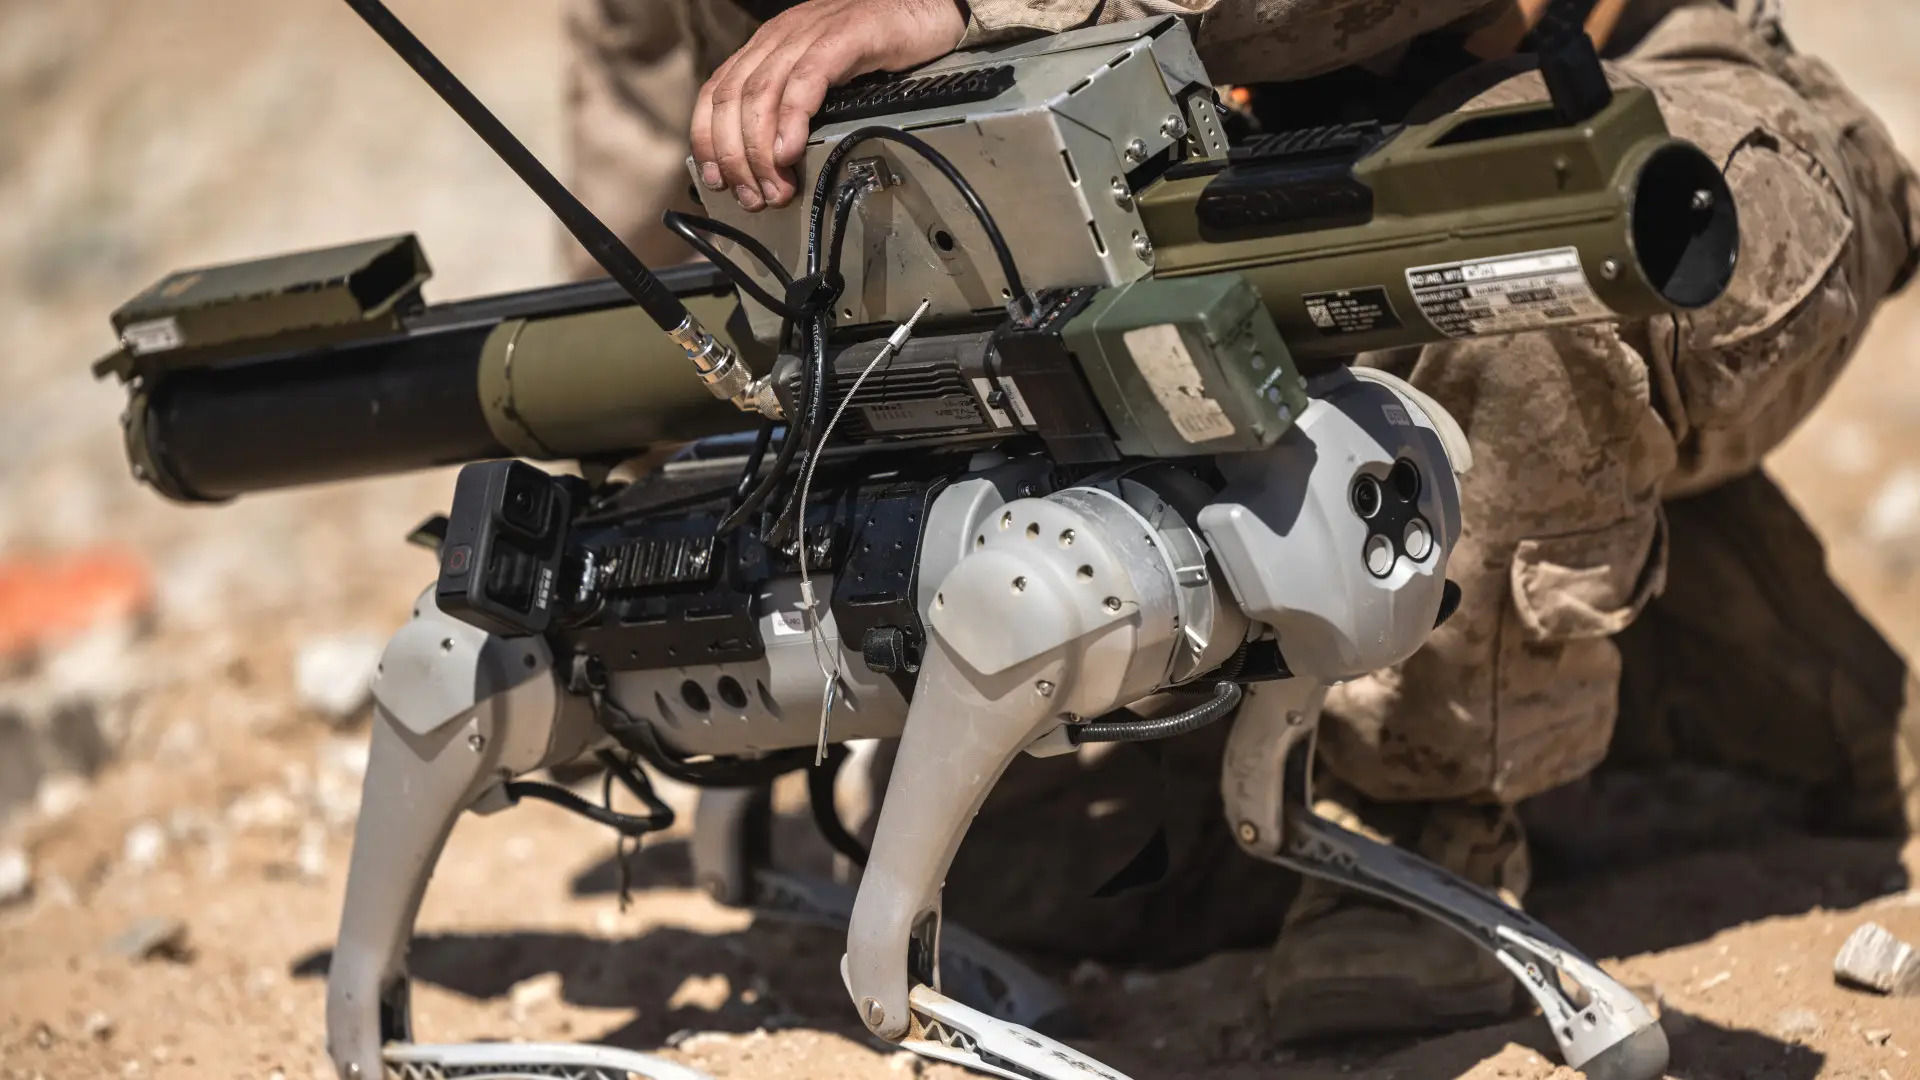 Ejercito Chino Introduce Perros Robot en Ejercicio Militar